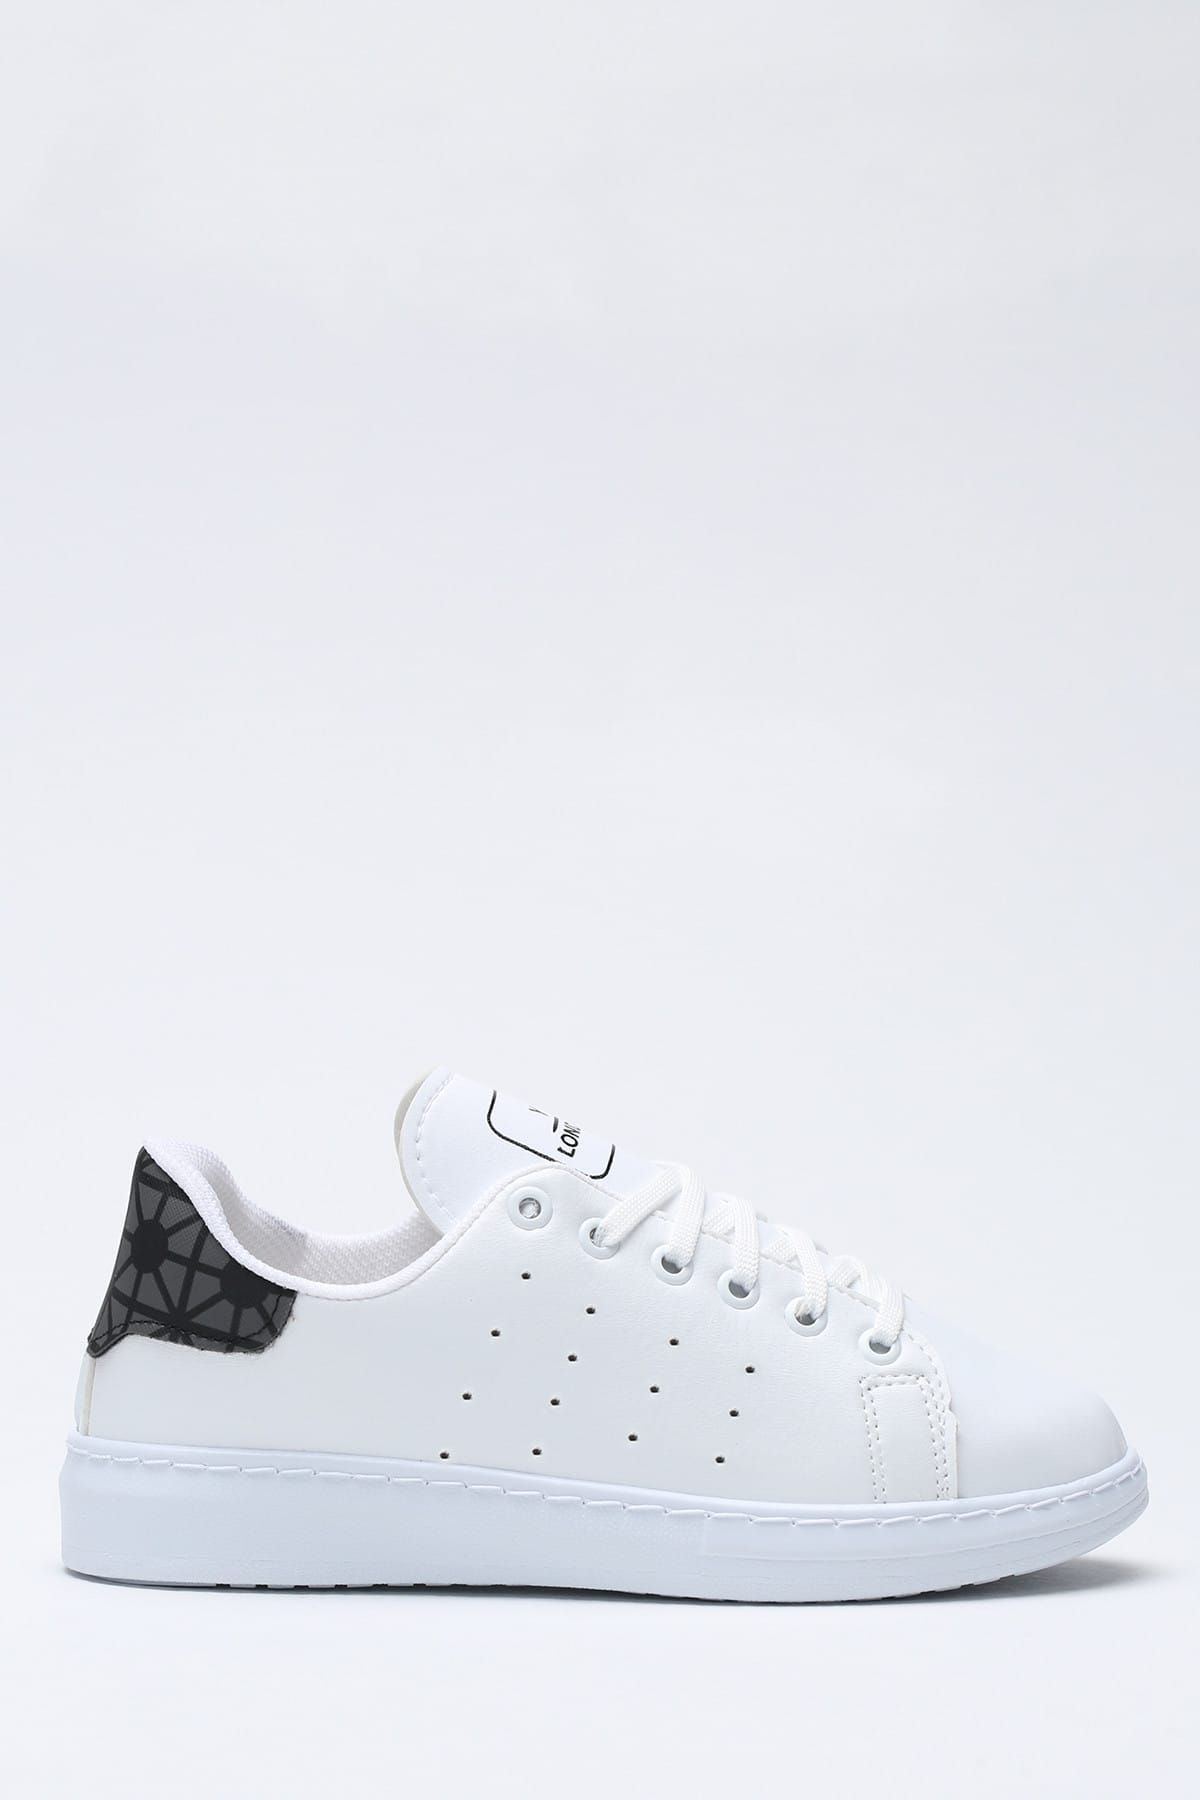 Ayakkabı Modası Beyaz Siyah Baskılı Kadın Ayakkabı 1938-9-4208-2